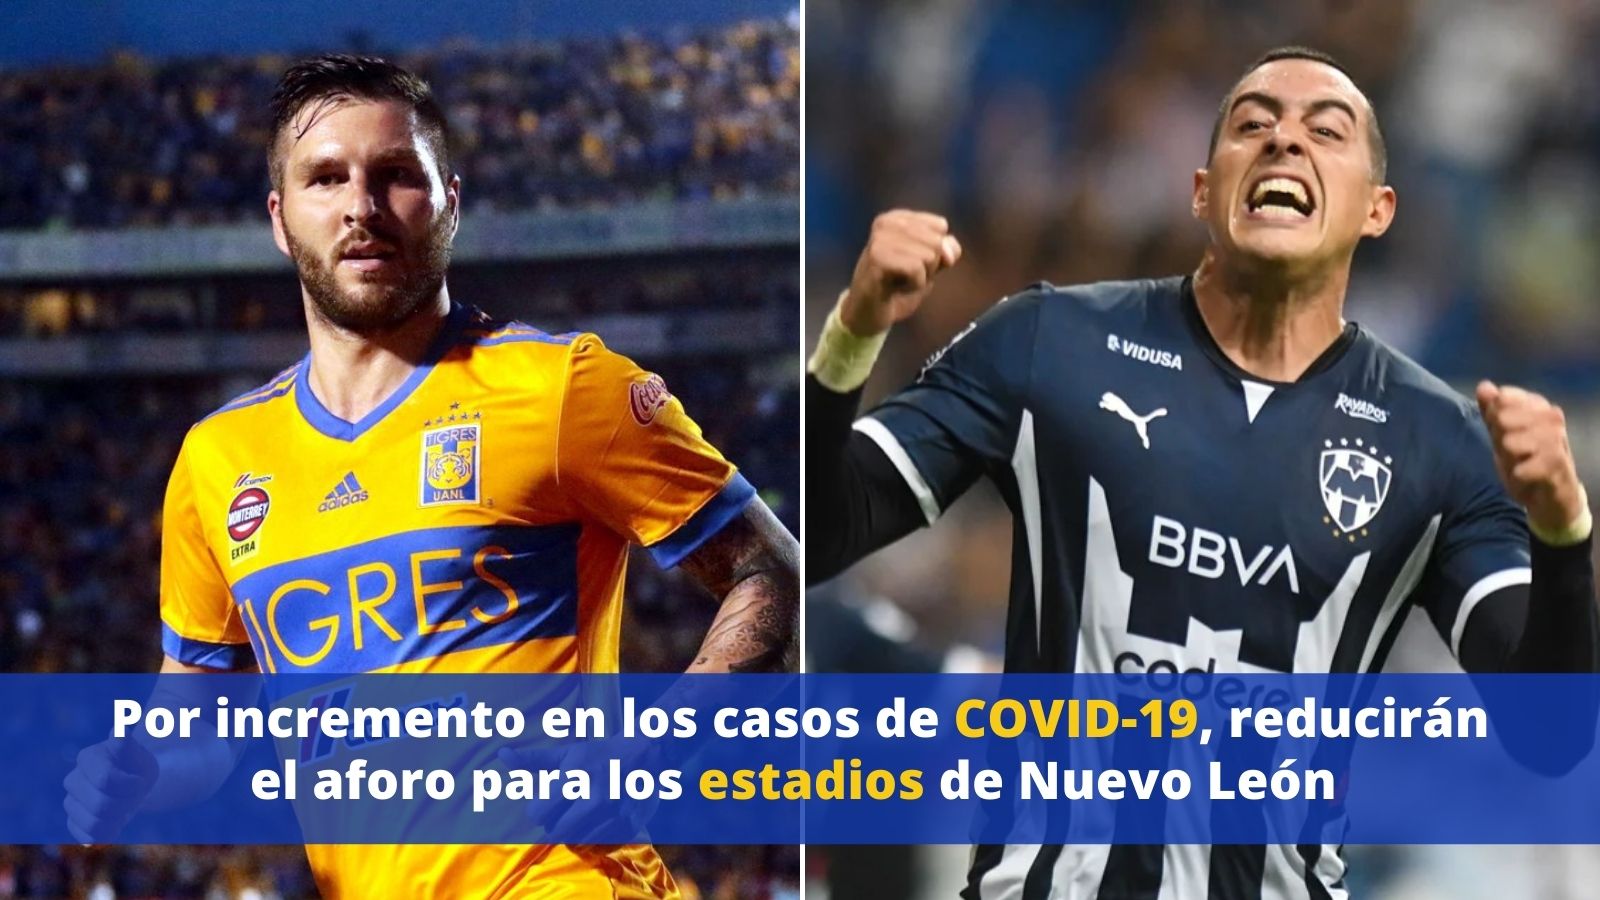 Estadios Nuevo León COVID-19